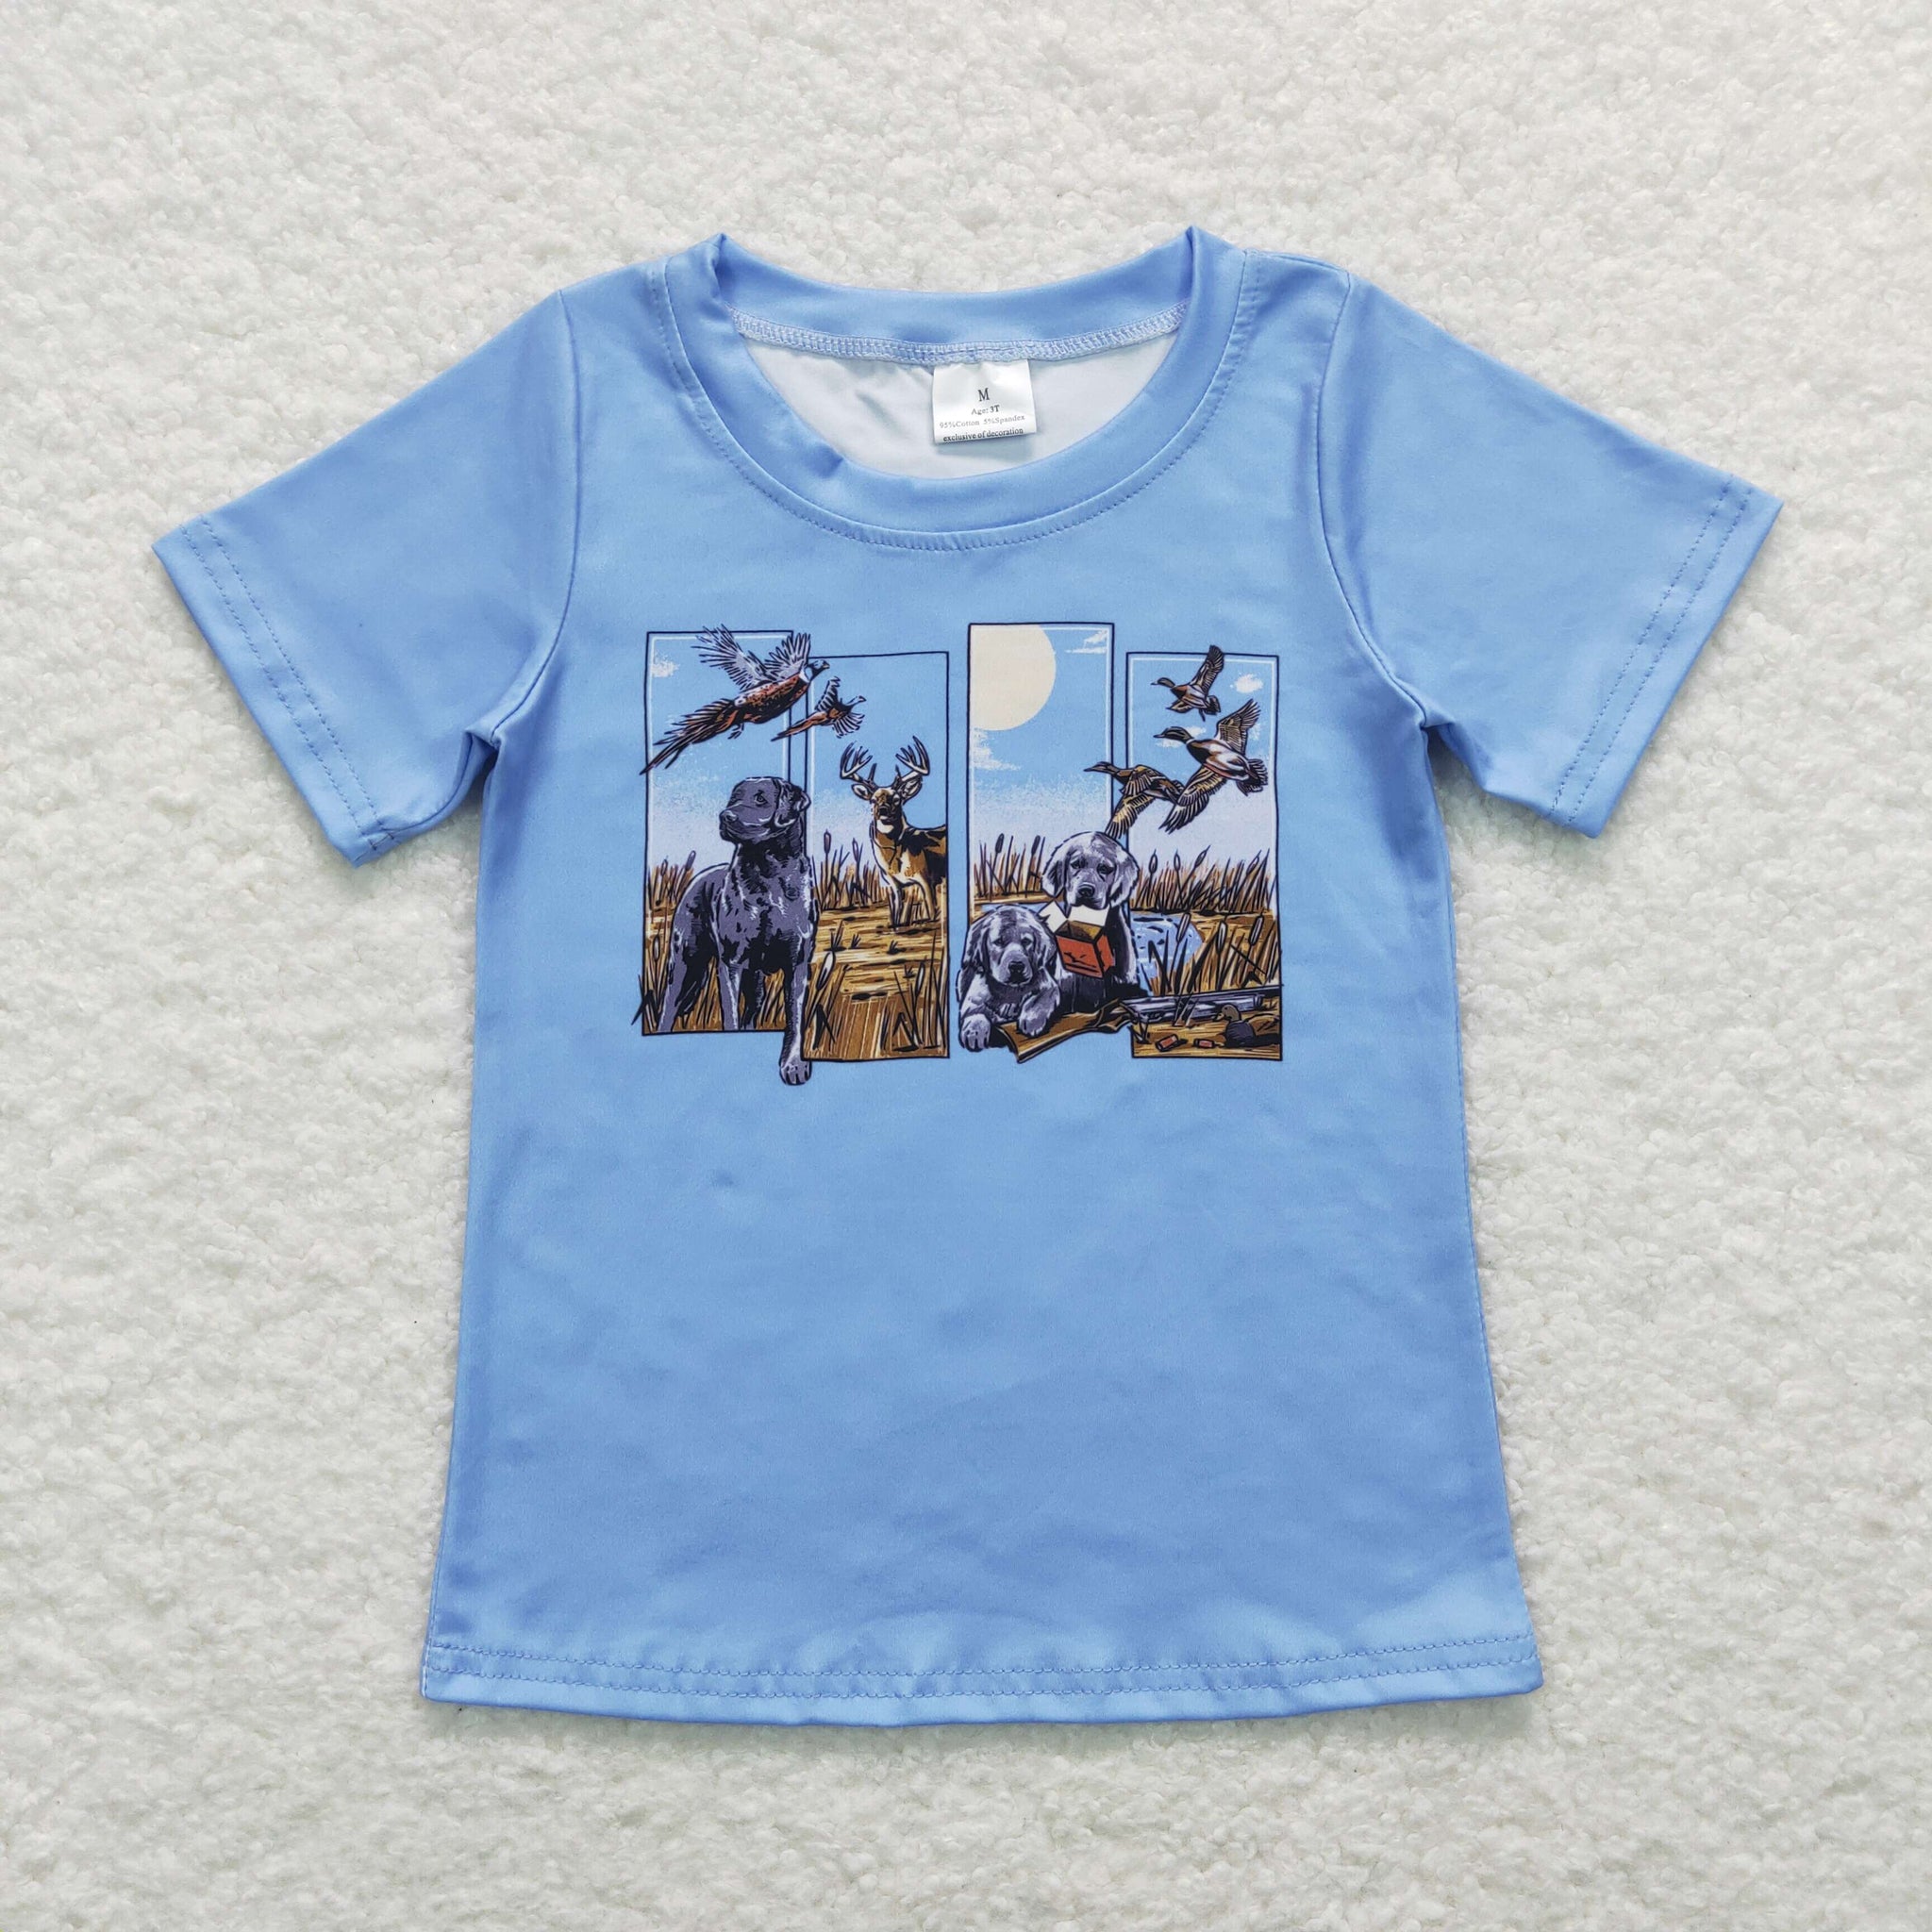 BT0509 baby boy clothes wild animals boy summer tshirt